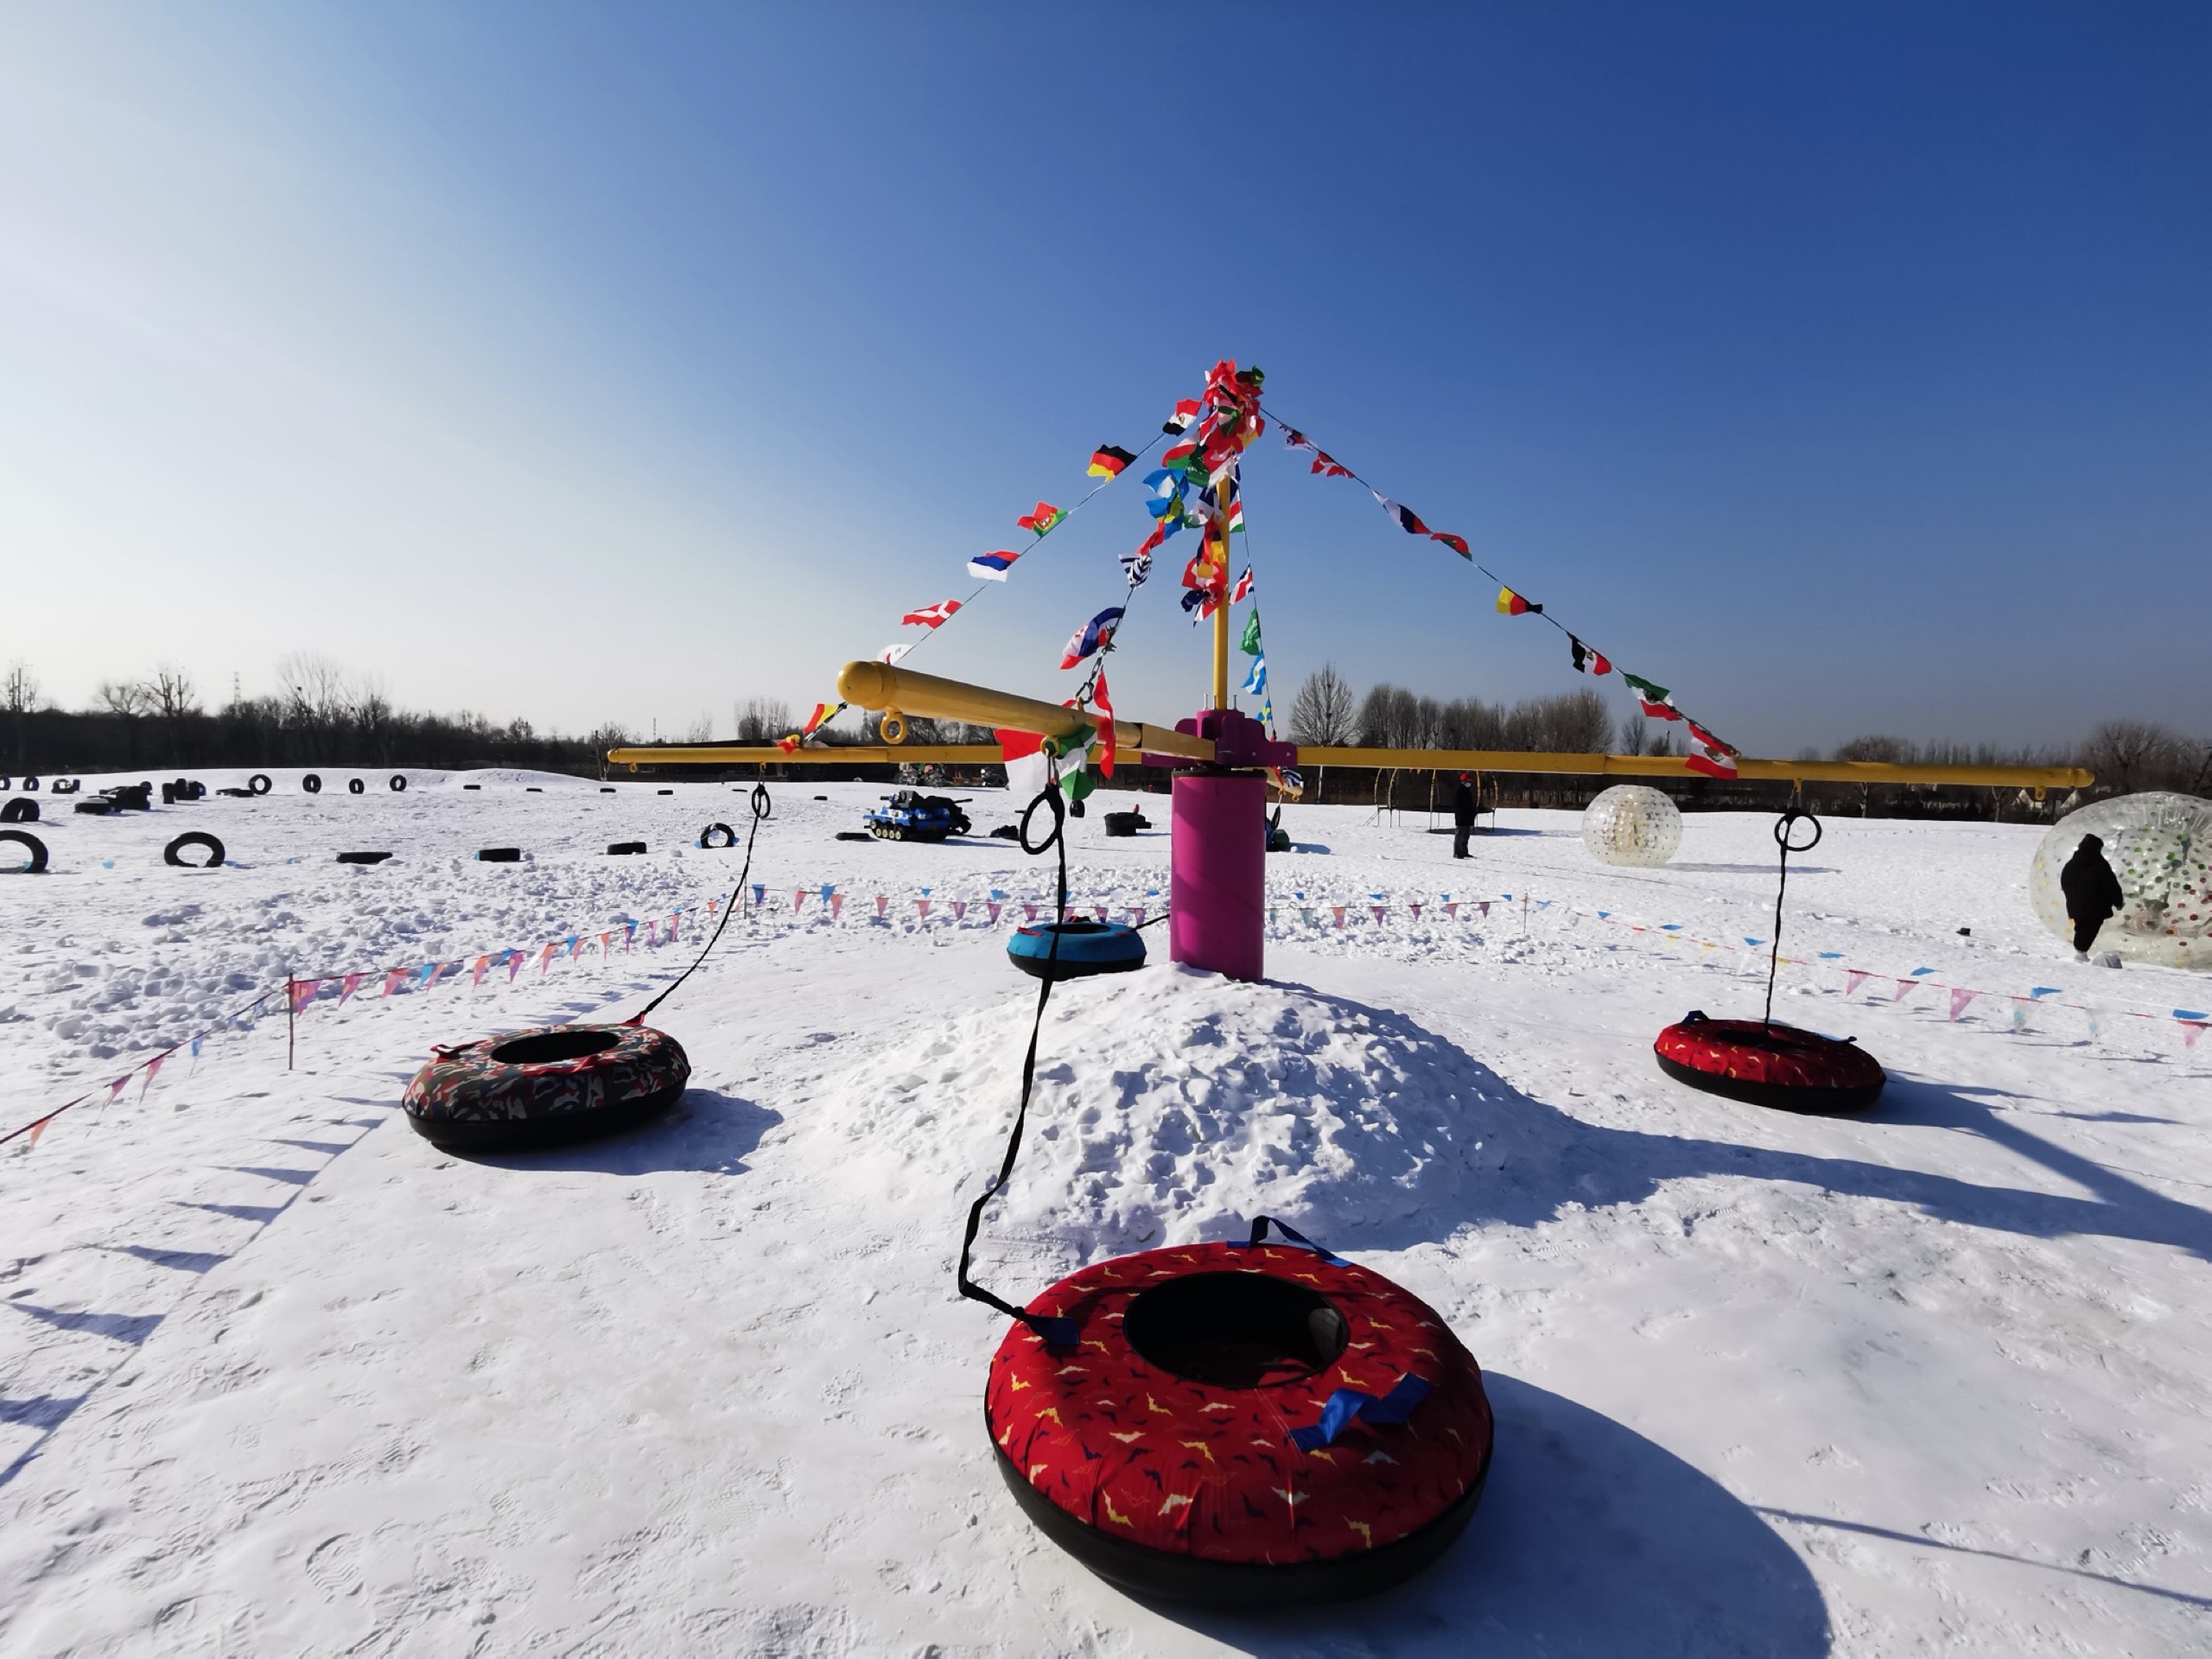 “北京圣露庄园冰雪嘉年华”这里不仅仅可以撒欢儿玩雪